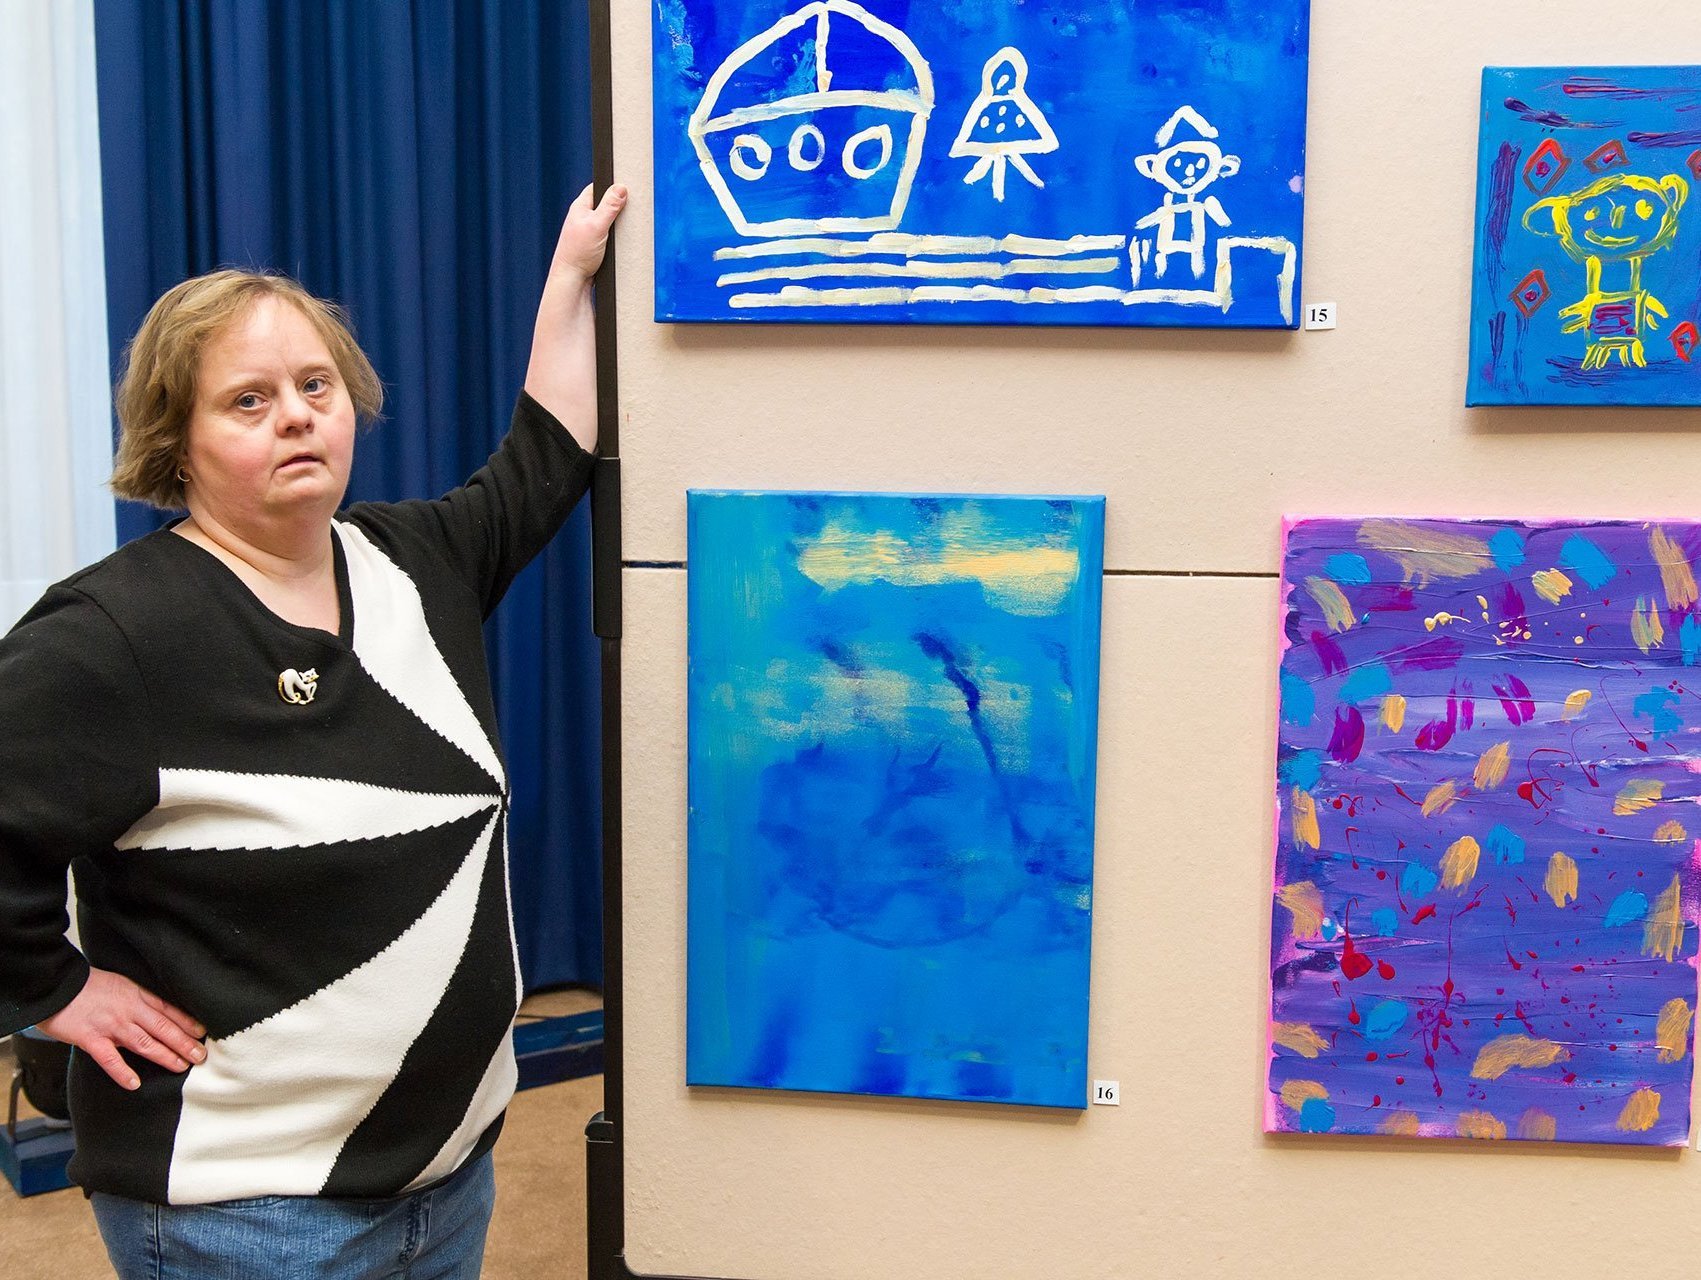 Eine Frau zeigt handgemalte Bilder an einer Wand - alle Bilder sind in blau gehalten